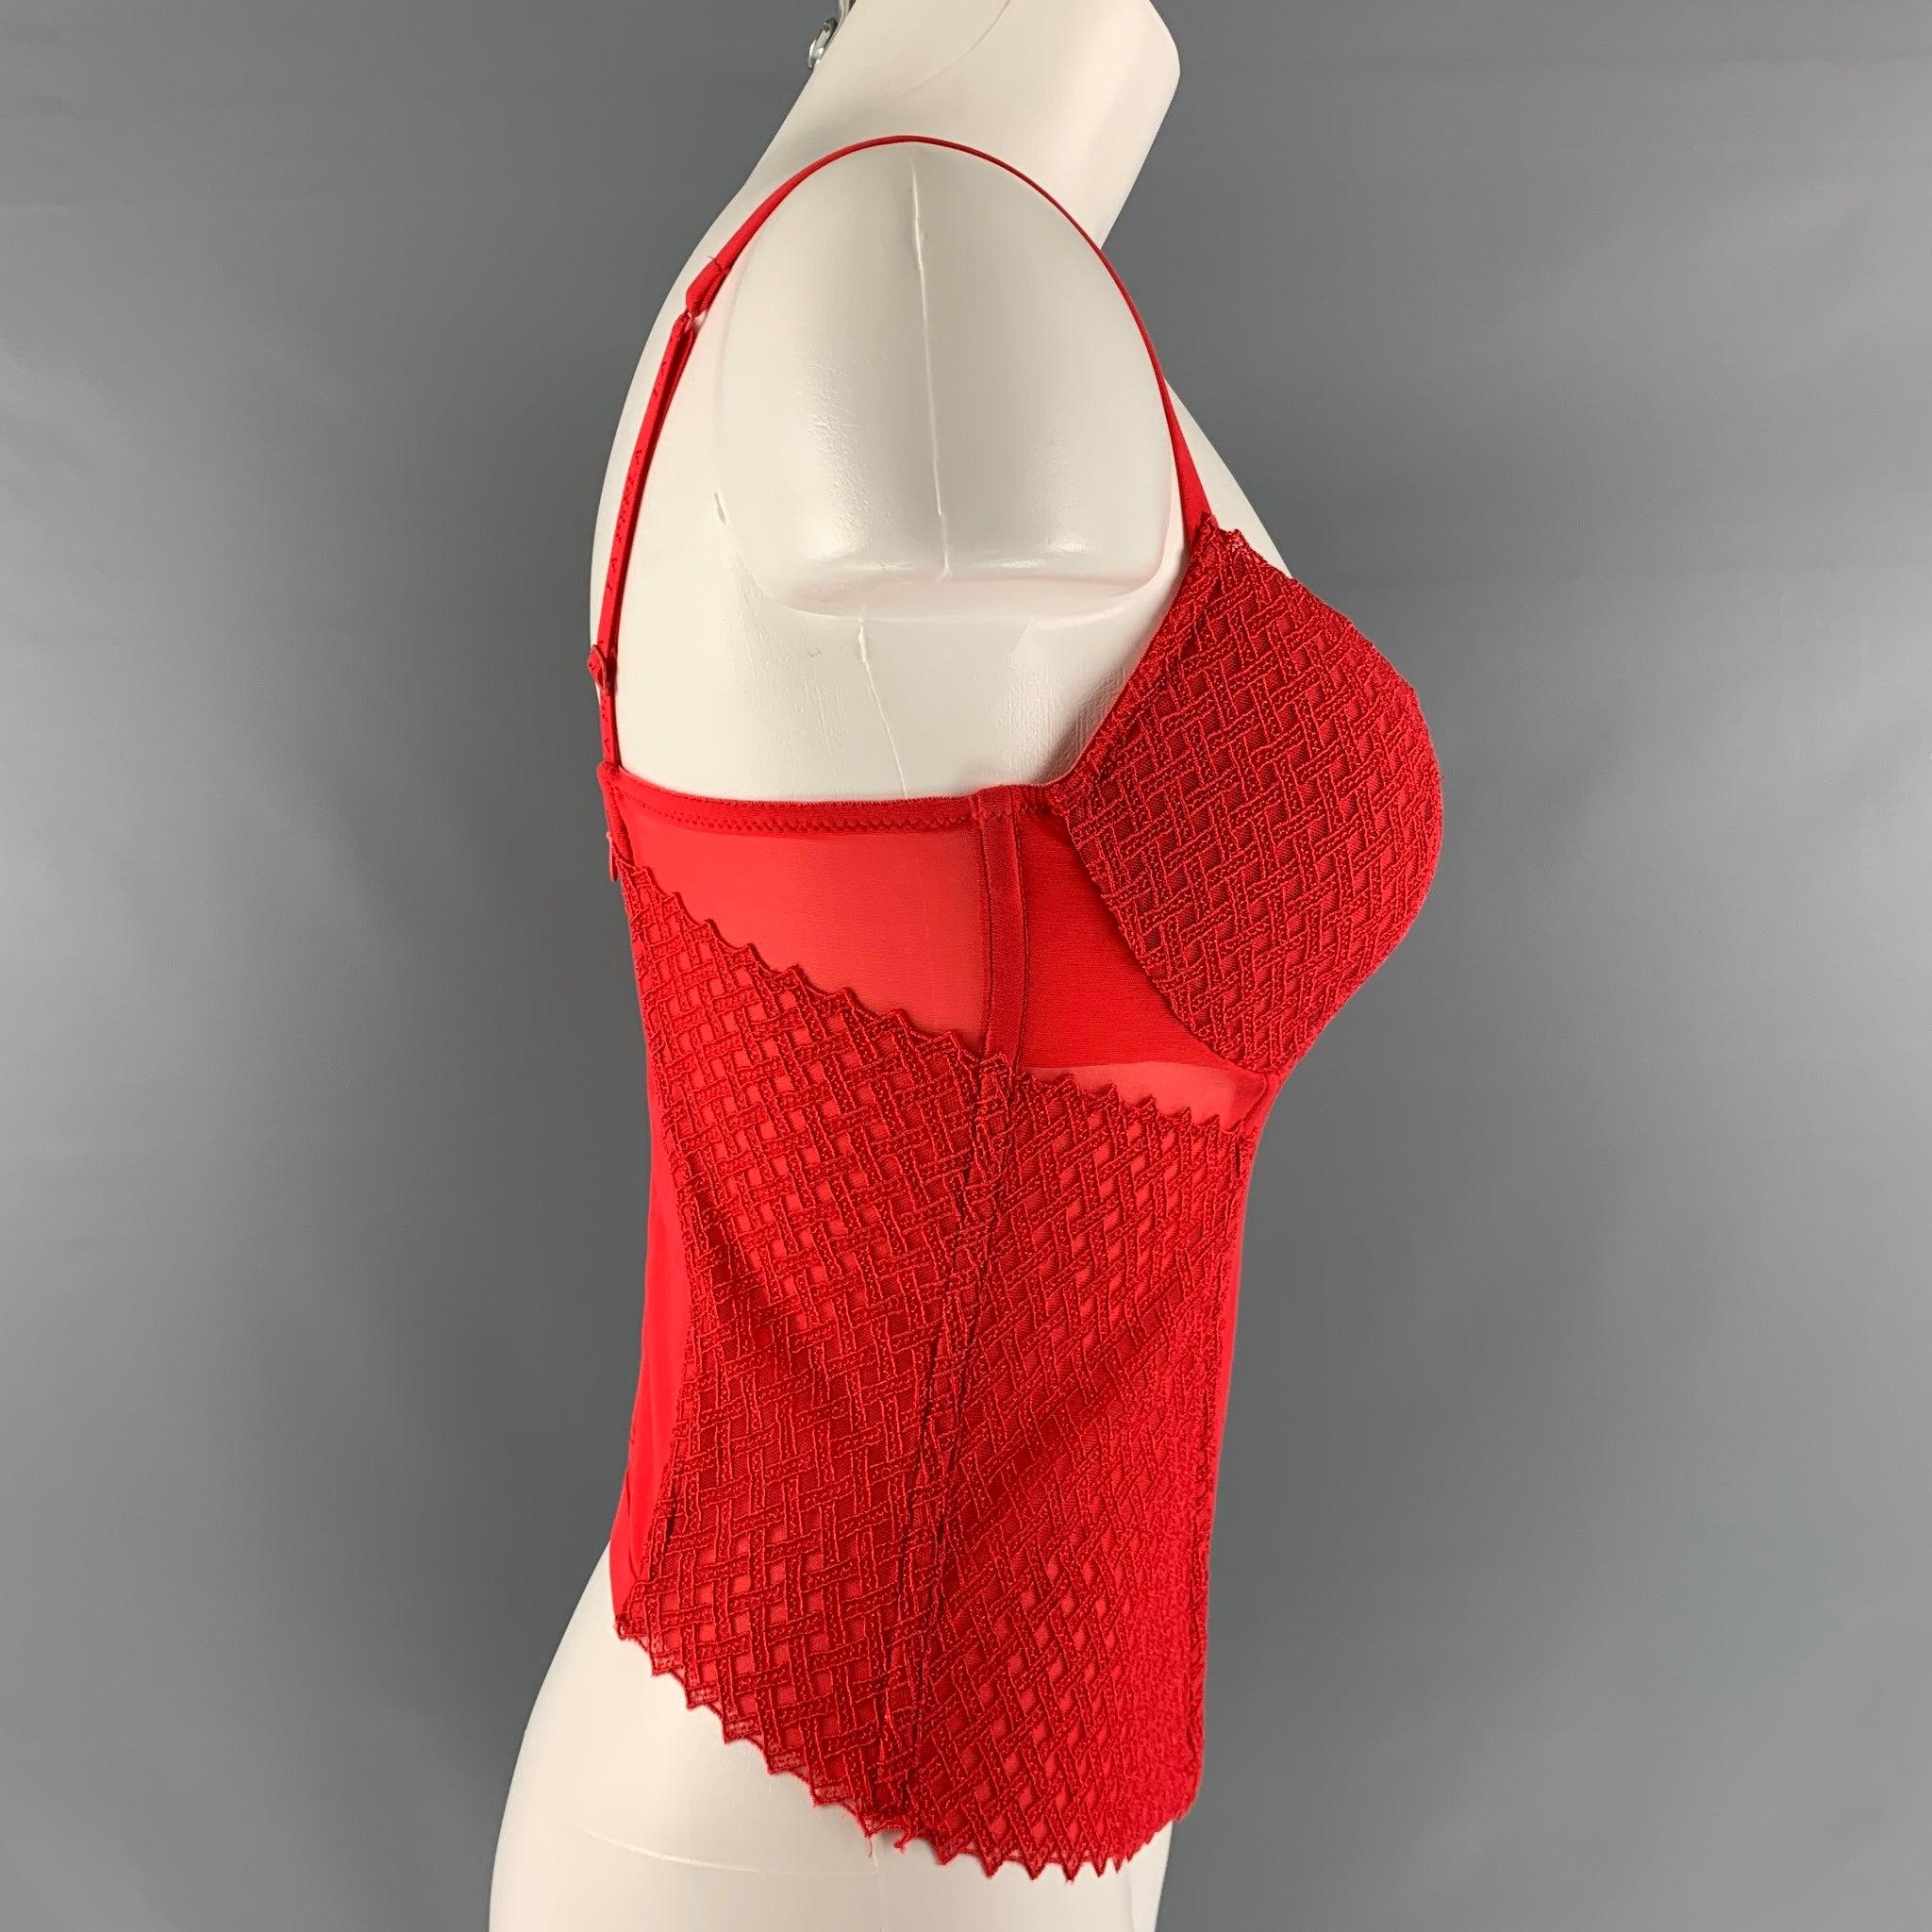 LA PERLA Korsett Kleid Top kommt in rot Polyamid gestrickt Material mit einer gemischten Textur und Reißverschluss in der Mitte back.Excellent Pre-Owned Condition. 

Markiert:  3 IT 

Abmessungen: 
 Brustumfang: 28 Zoll Länge: 13 Zoll 
 
 
 
 
Sui